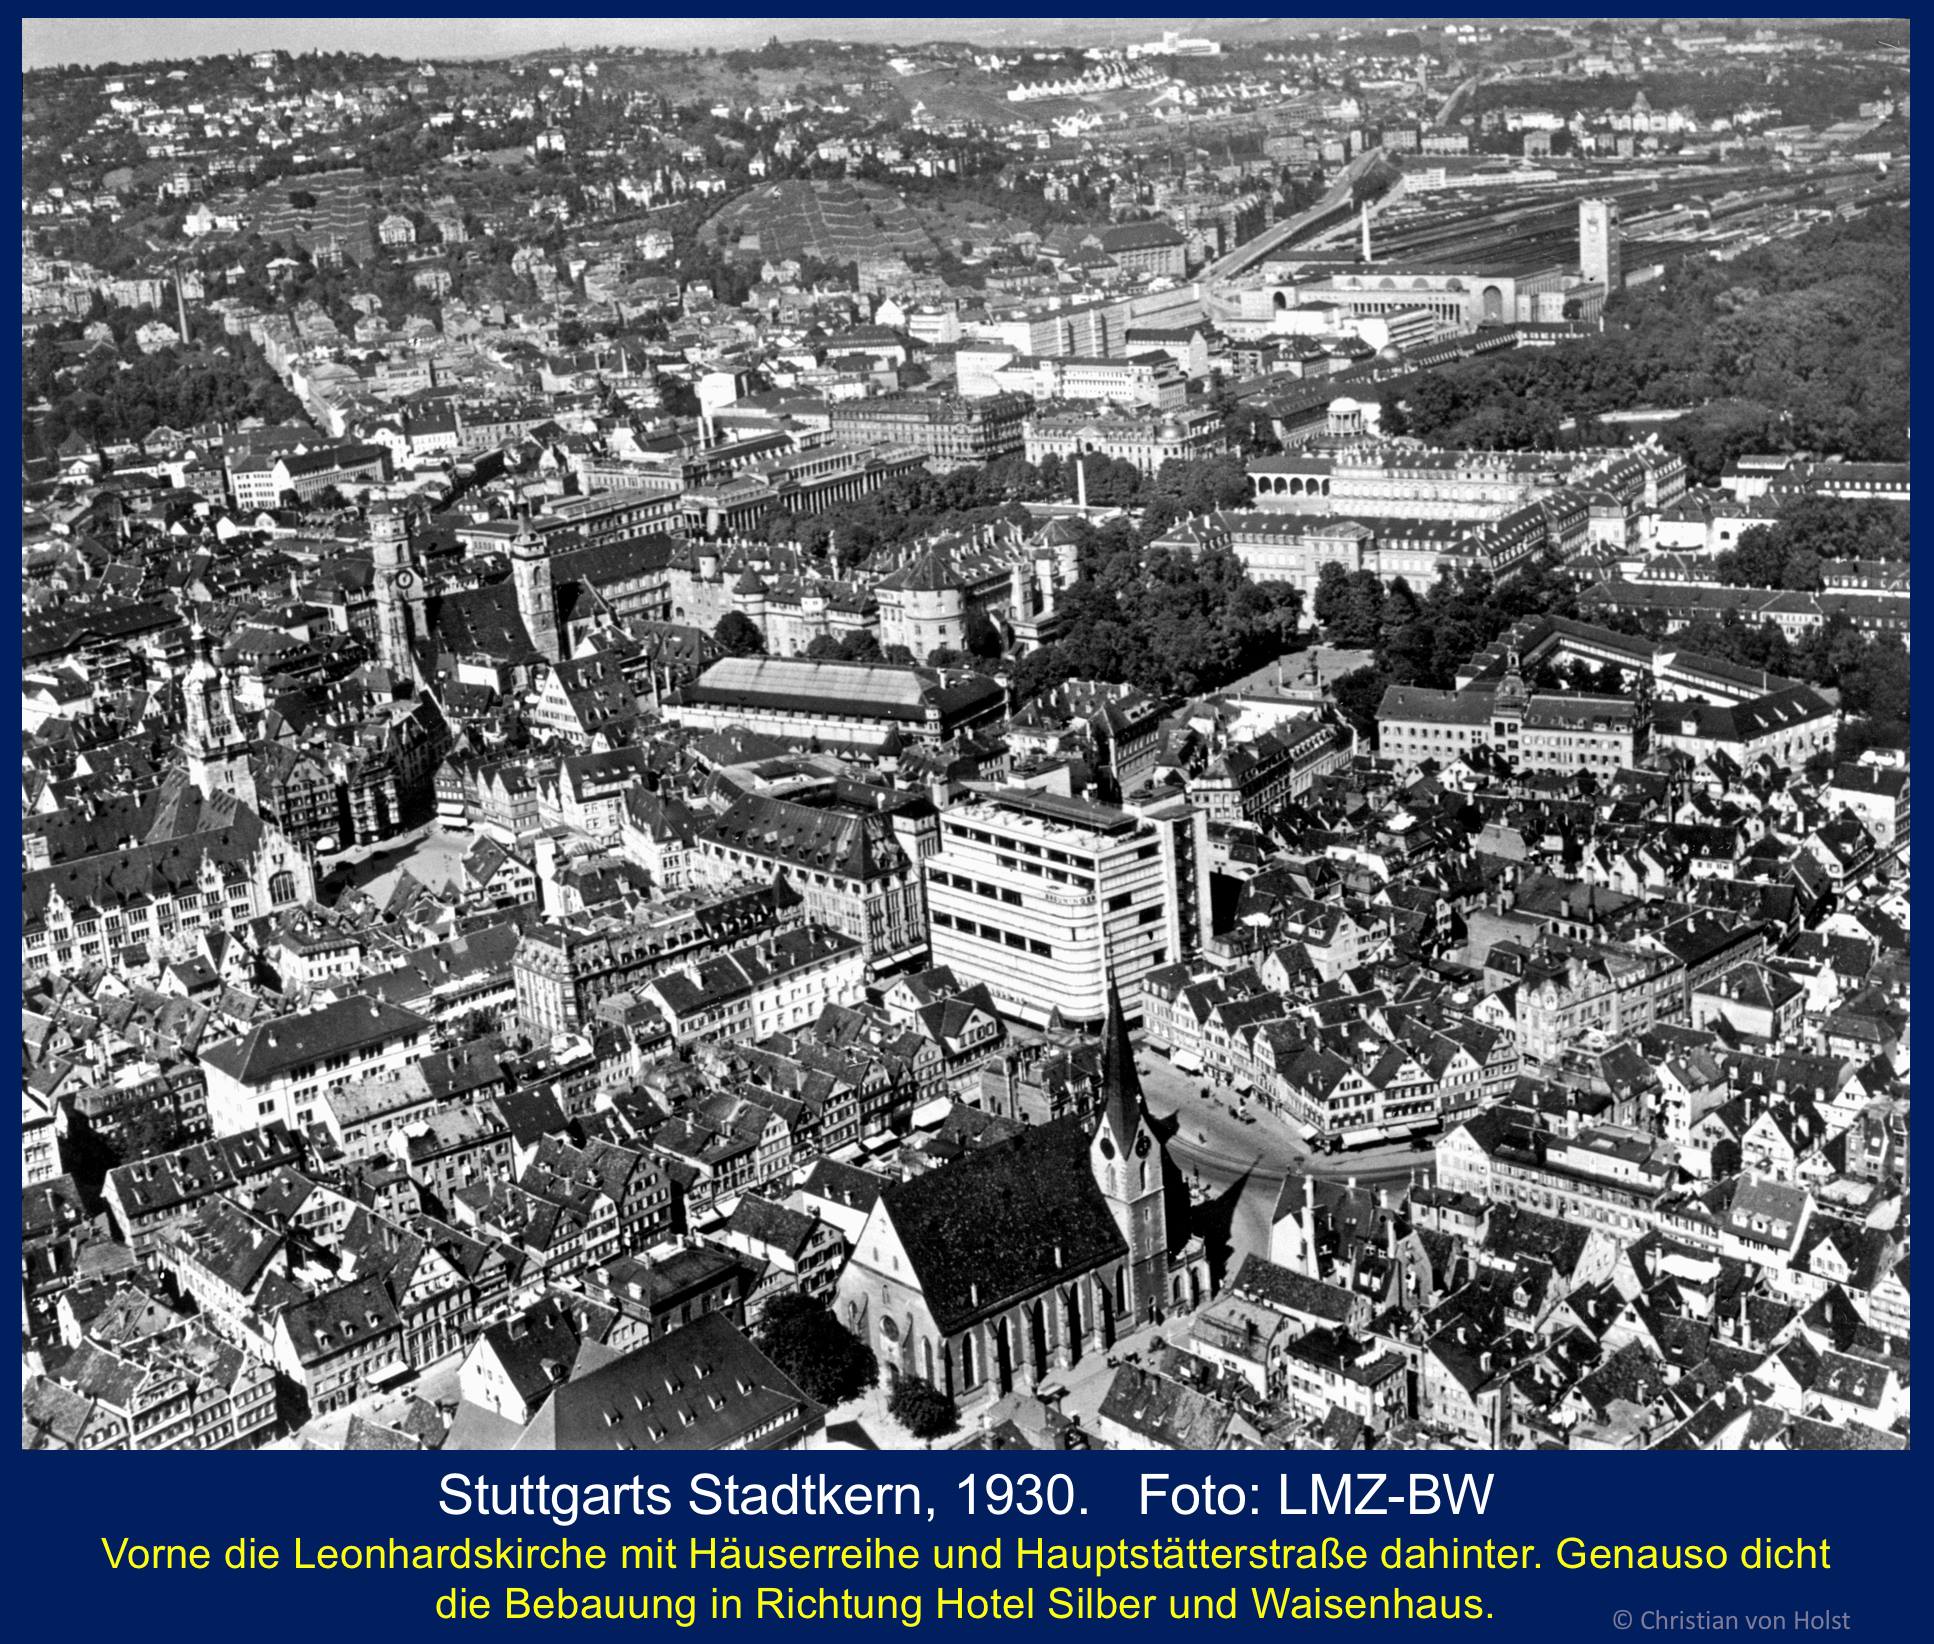 Stuttgarts Stadtkern Luftbild 1930